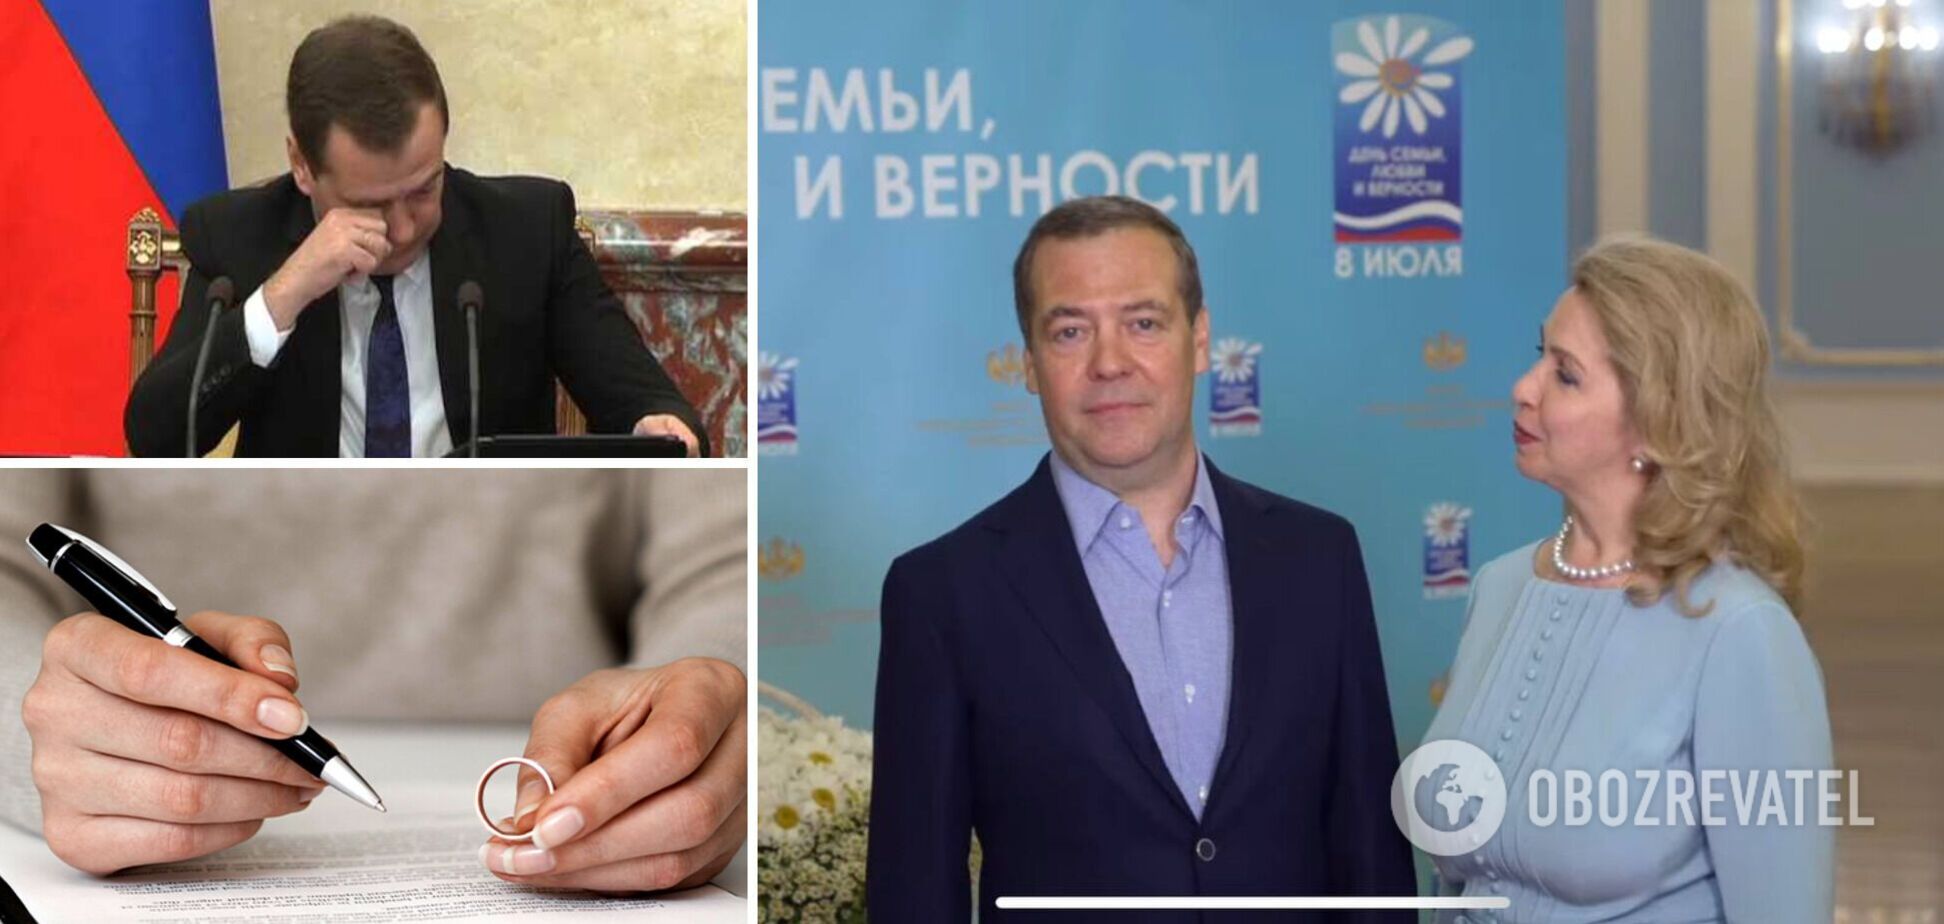 Медведев отреагировал на слухи о разводе с женой странным видео